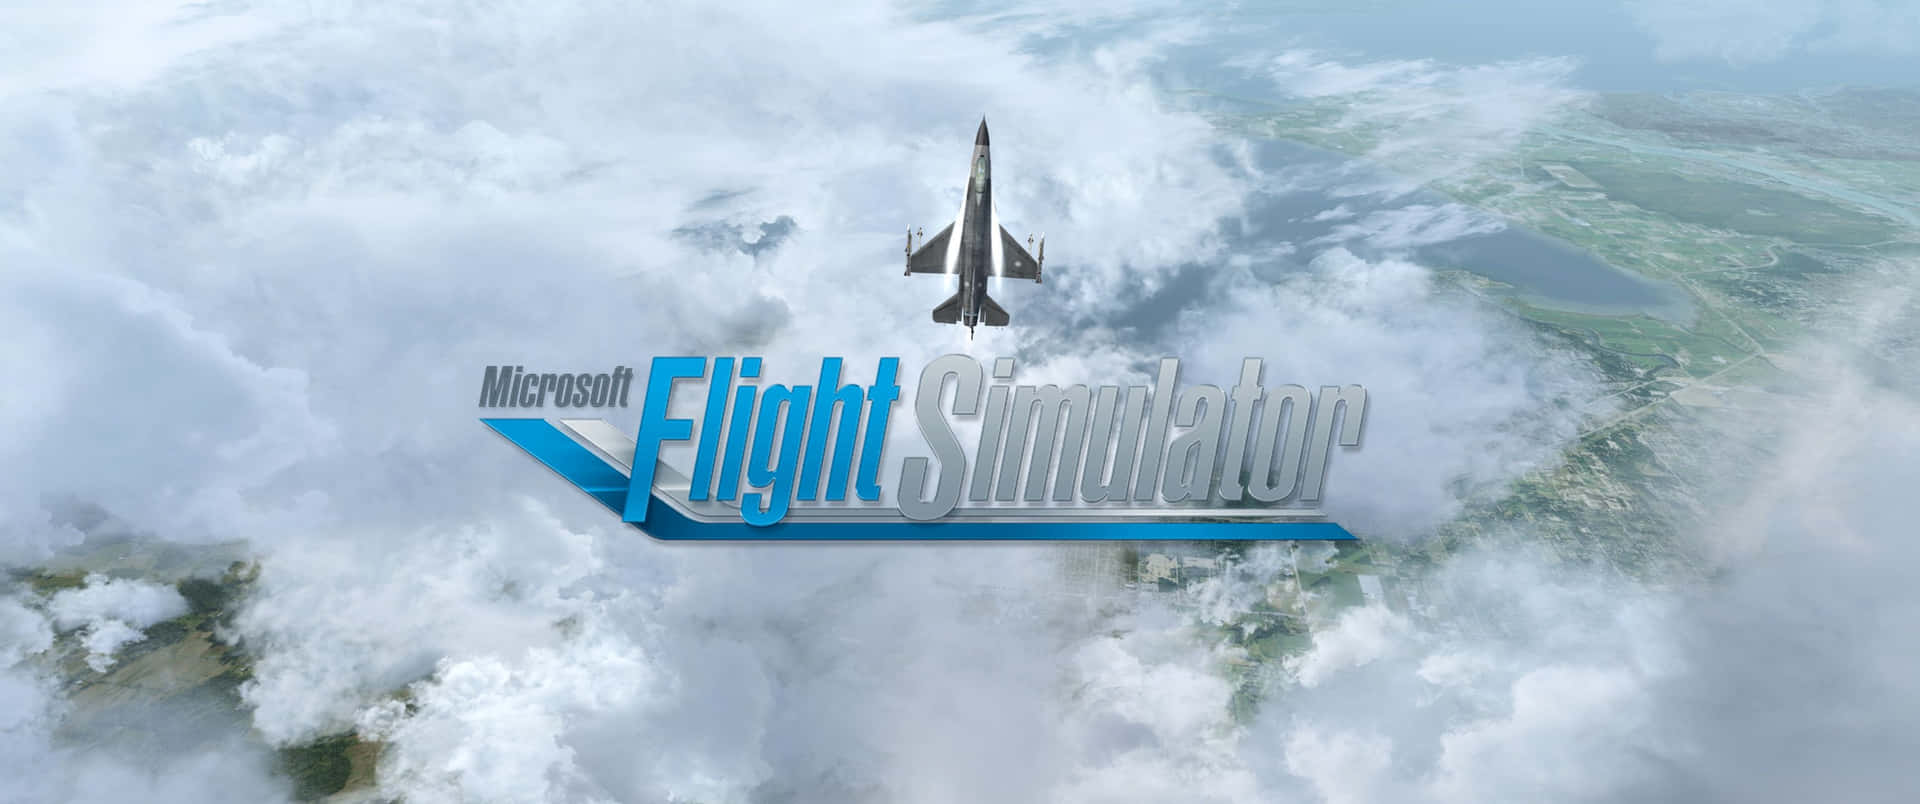 Esplorail Mondo Con Il Microsoft Flight Simulator